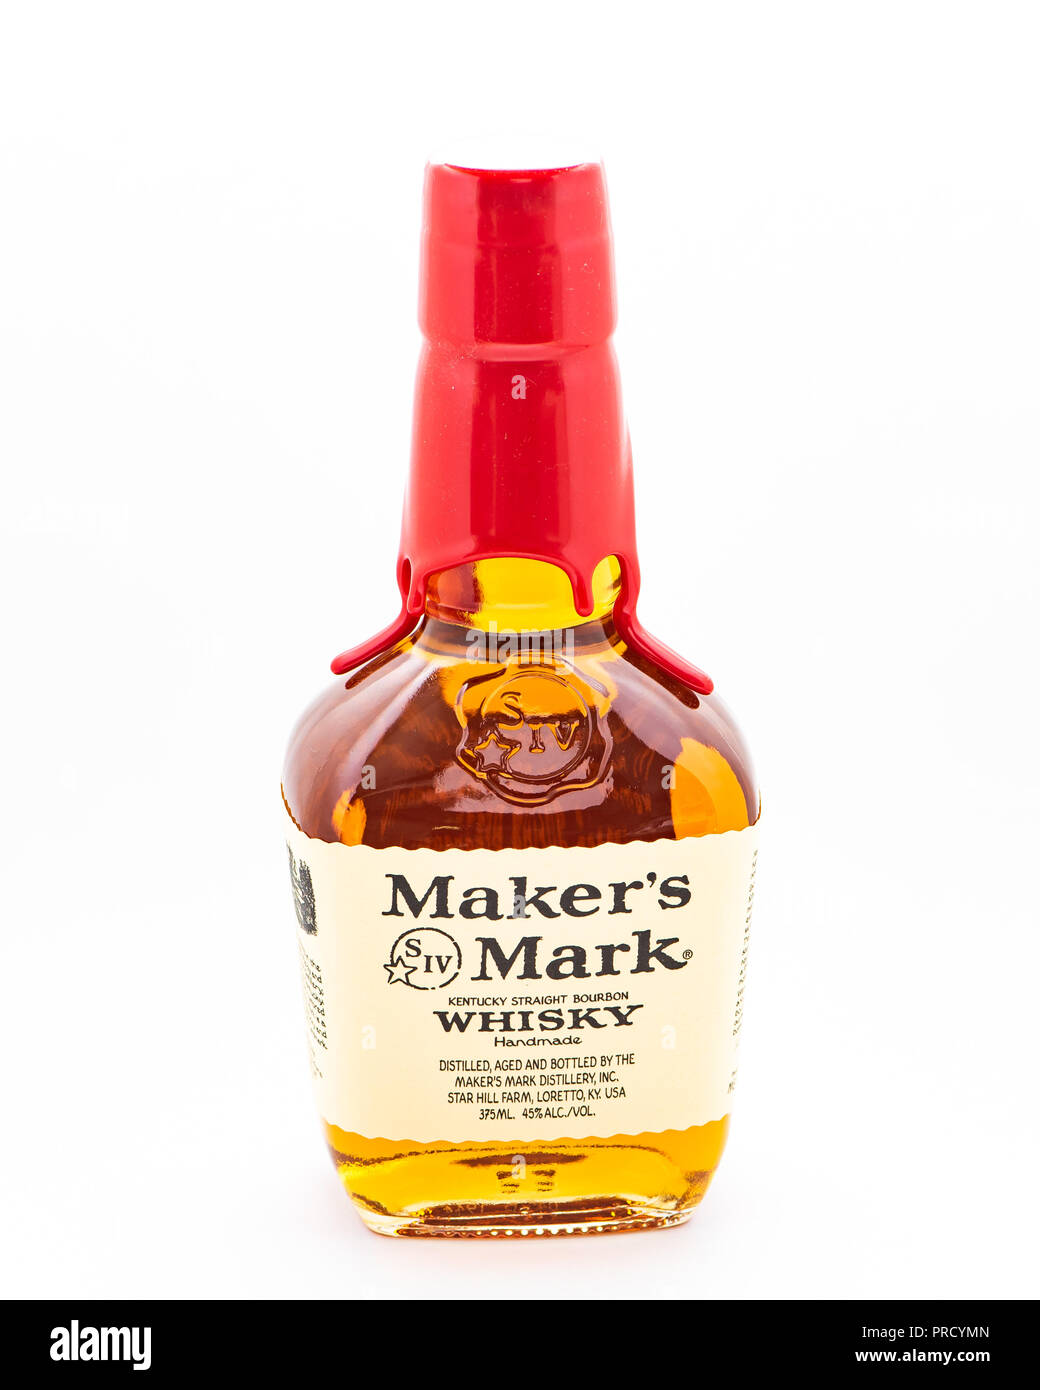 Eine versiegelte Flasche Maker's Mark Kentucky straight Bourbon Whisky. Stockfoto